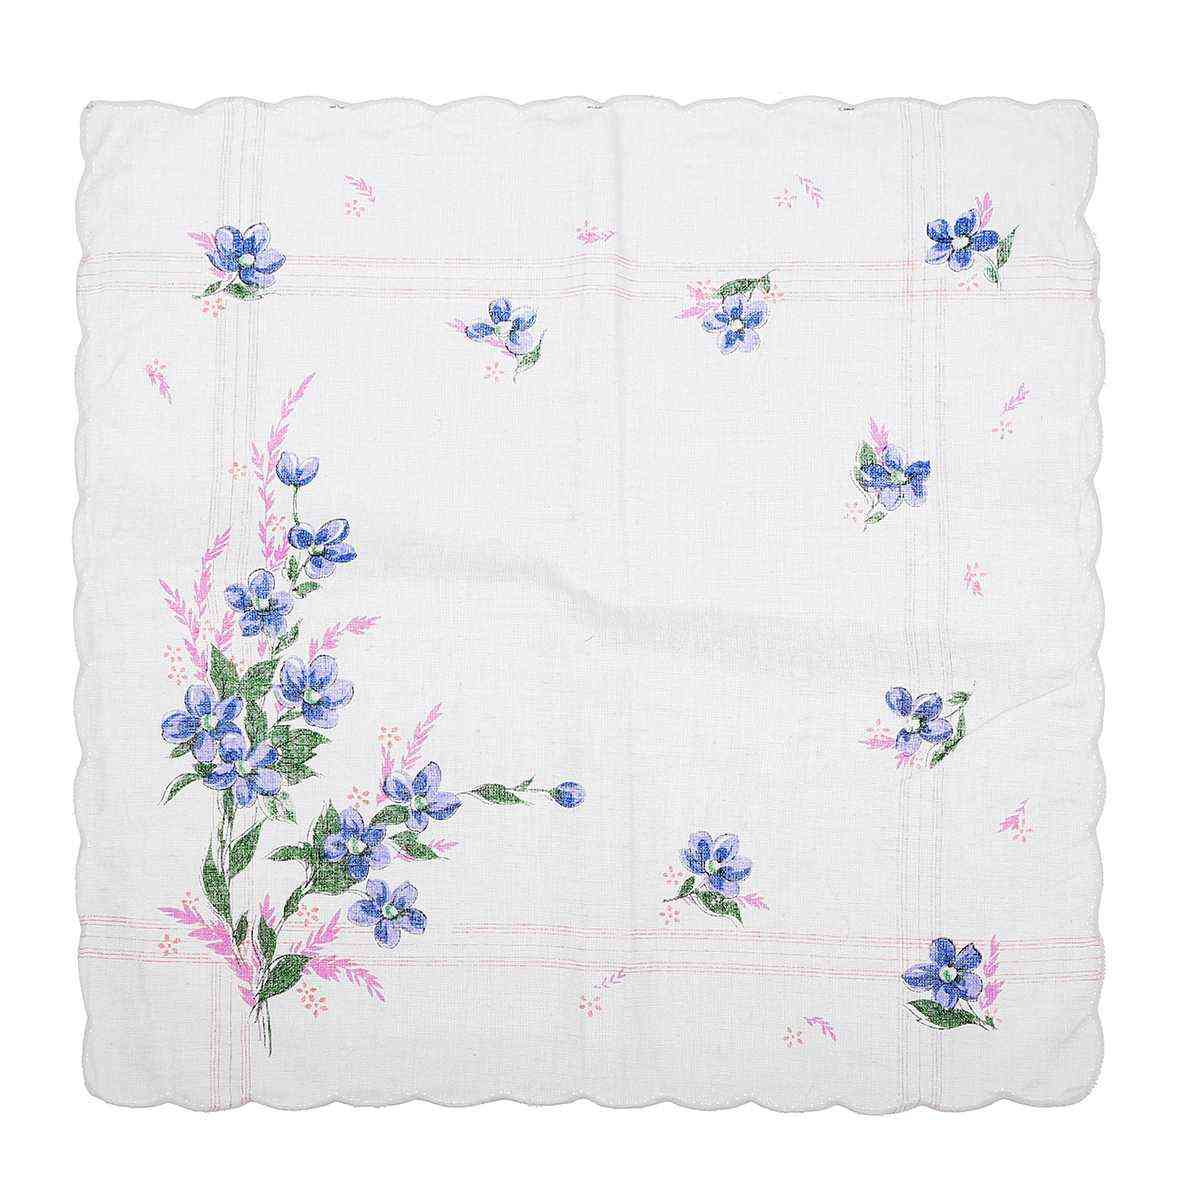 Vintage Design Cotton Square Floral Handkerchief - Women Portable Napkin